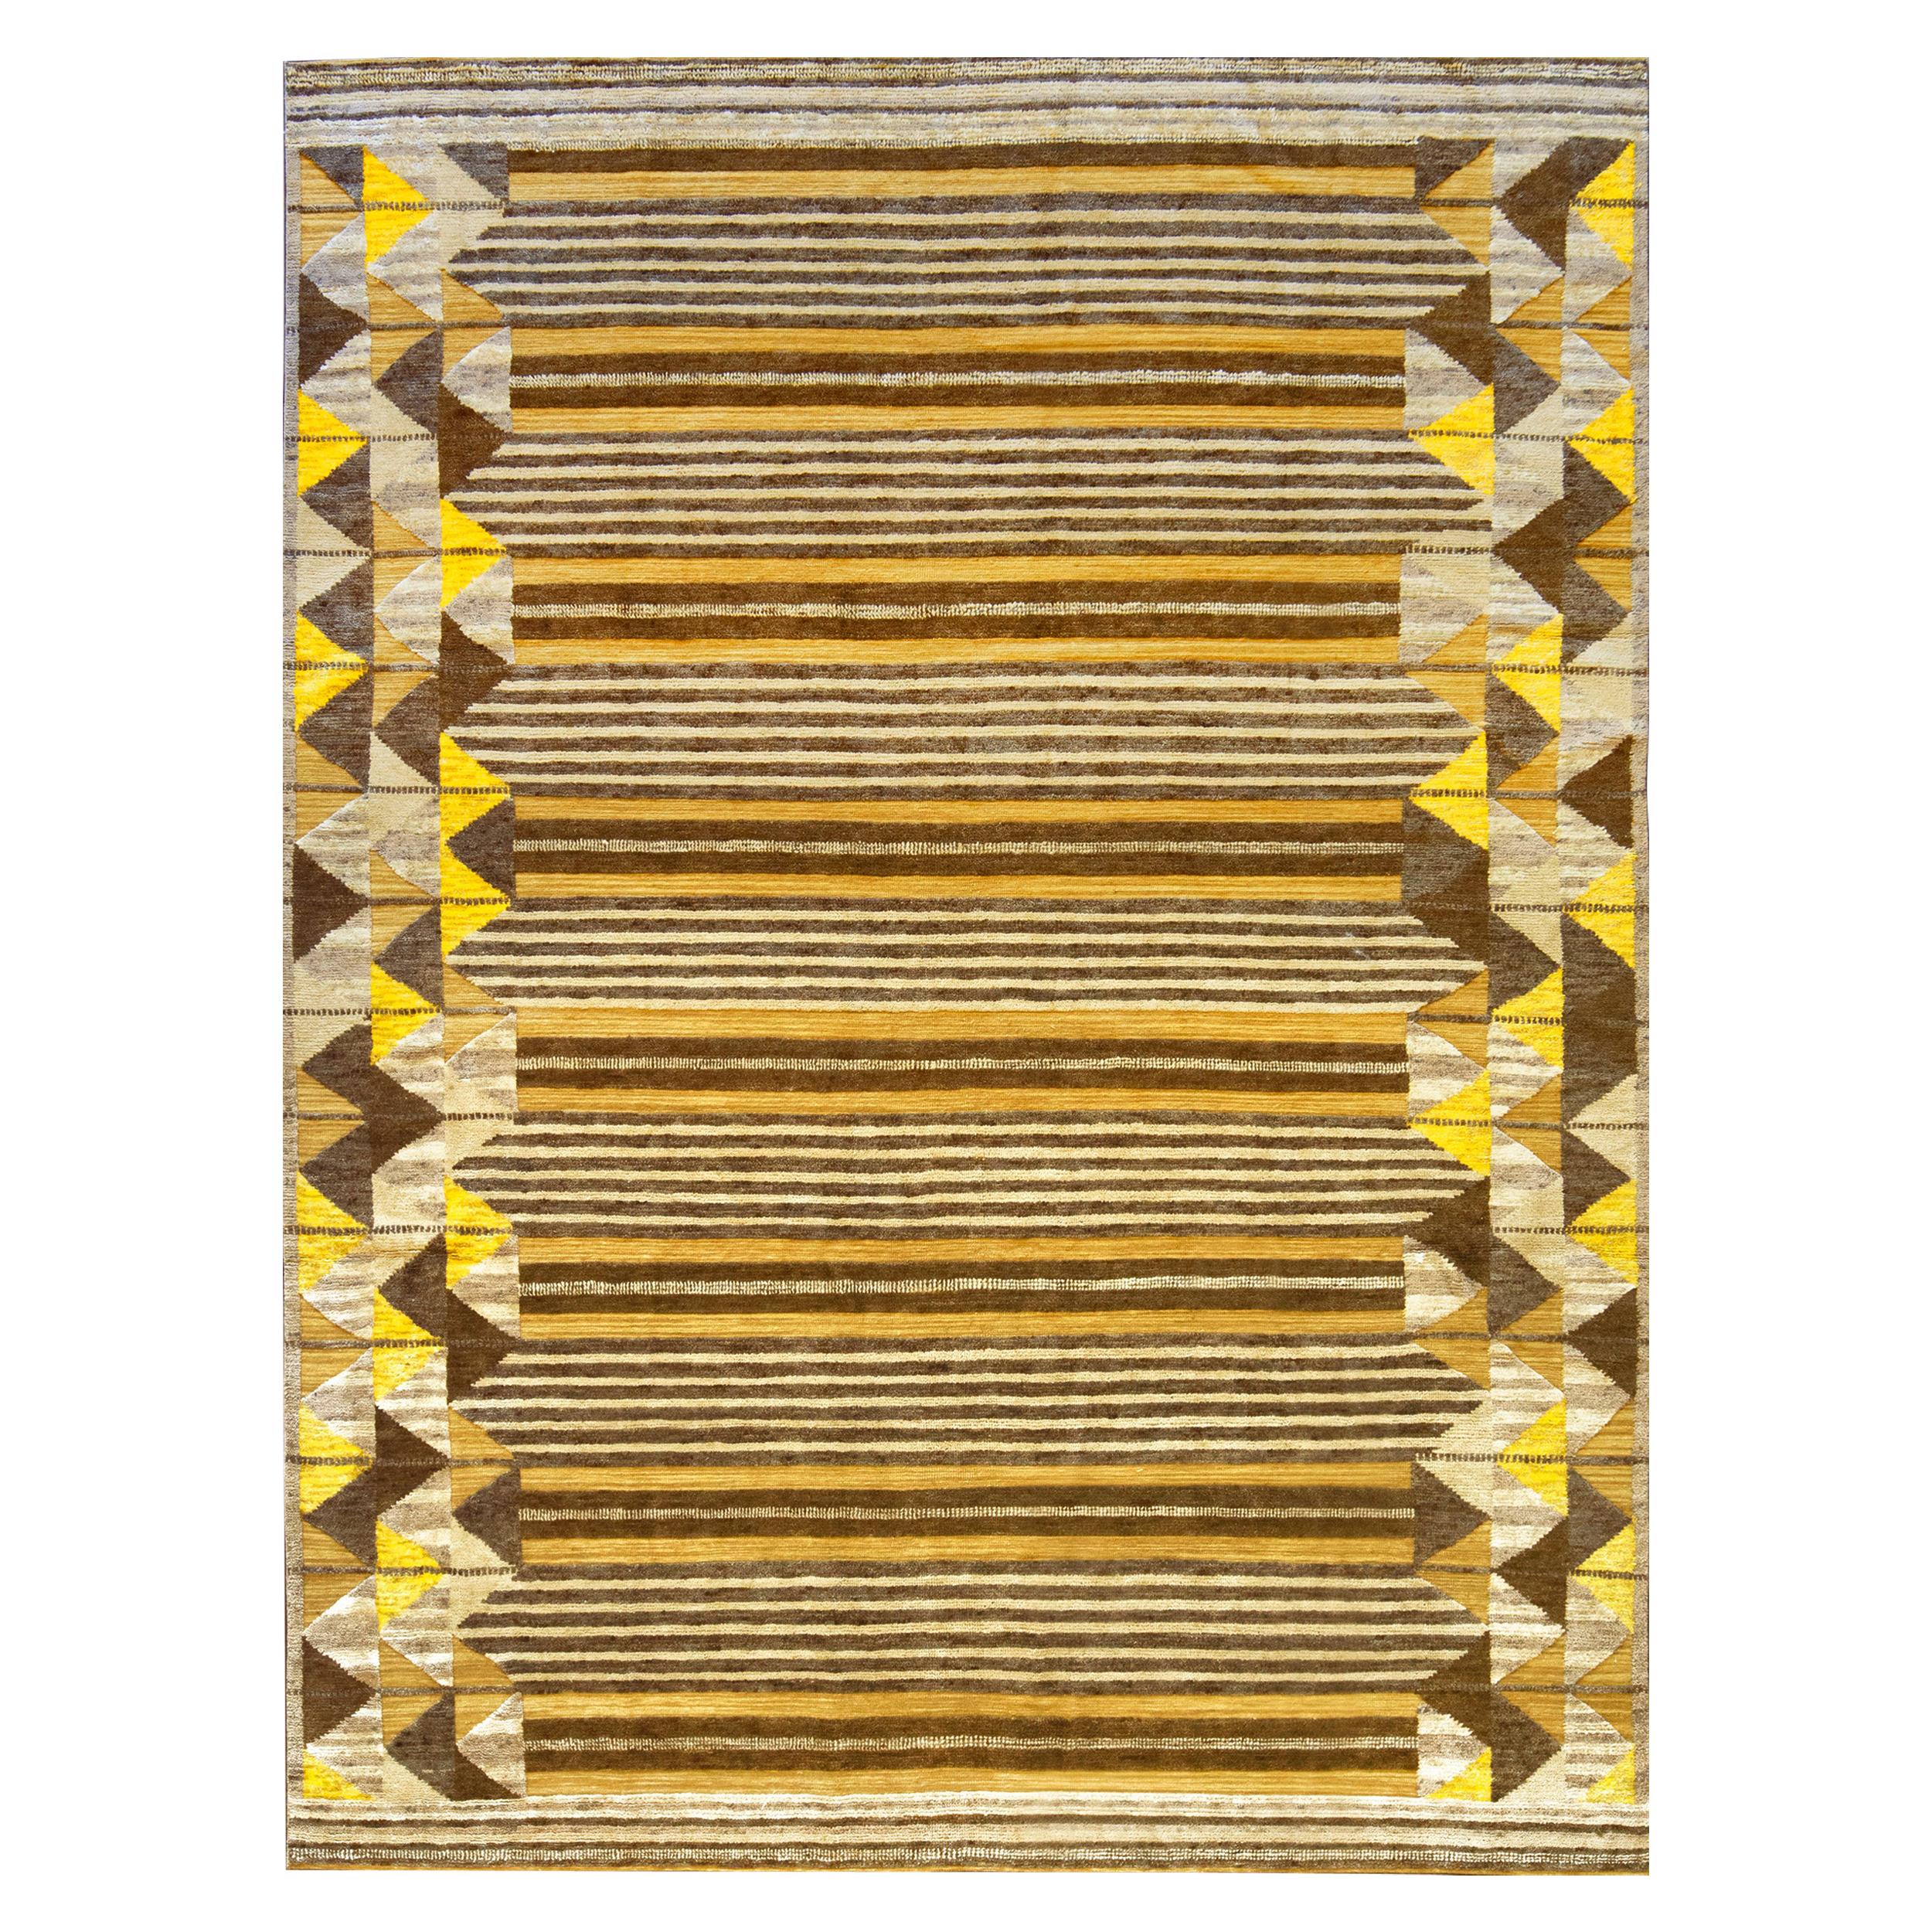 Schwedisch inspirierter handgewebter Teppich aus Wolle mit Seidenakzenten